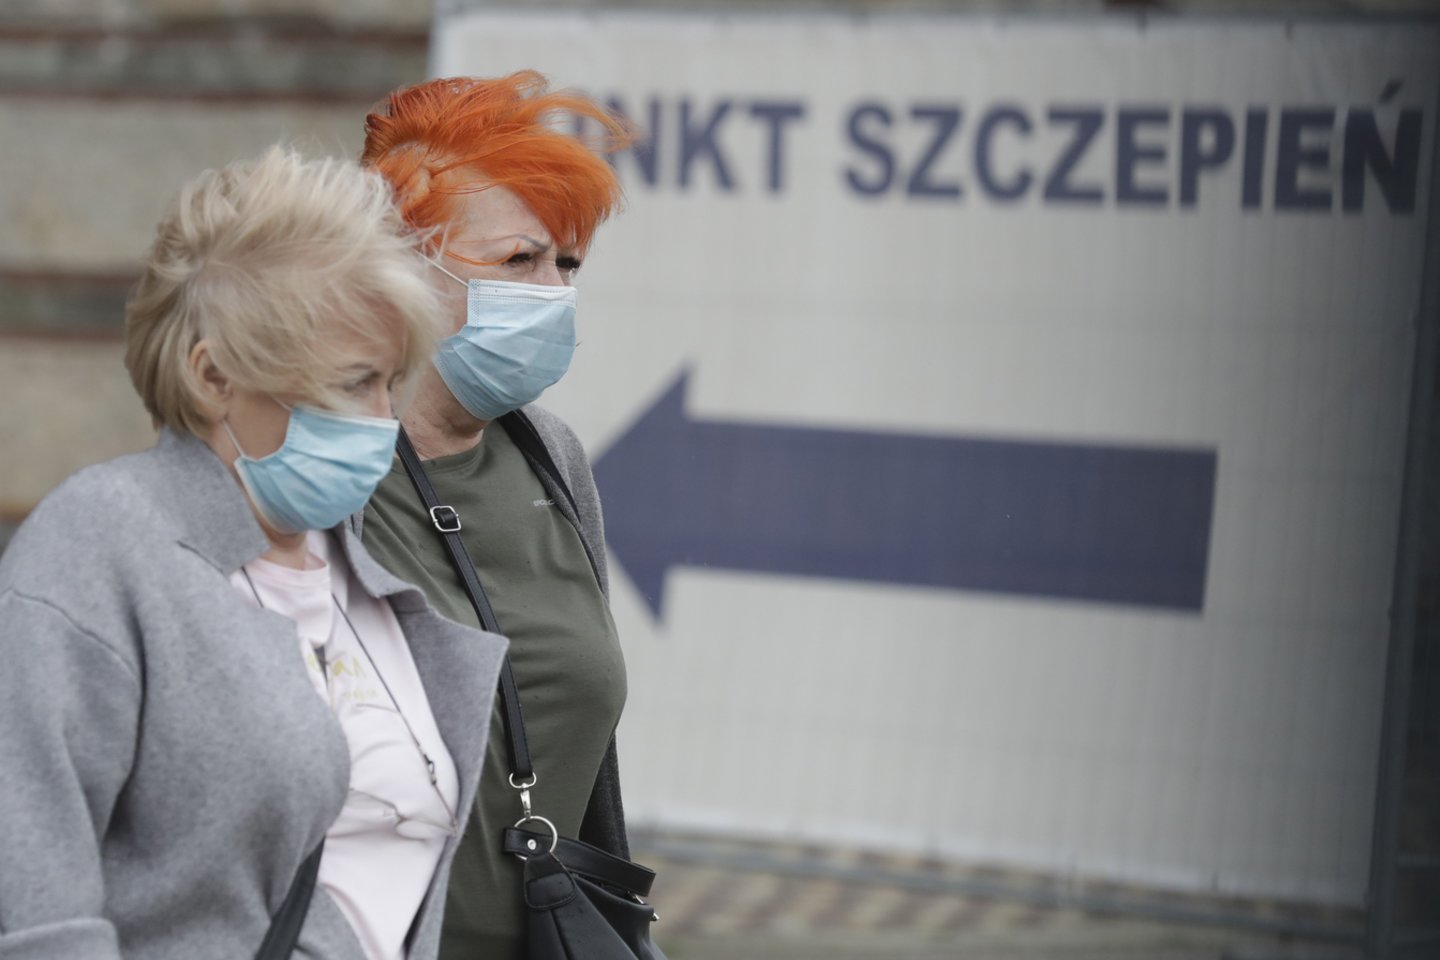 Lenkijoje opozicija tiek skiepų akciją, tiek apskritai kovą su pandemija vadina chaotiška ir nevykusia.<br> AP/Scanpix nuotr.